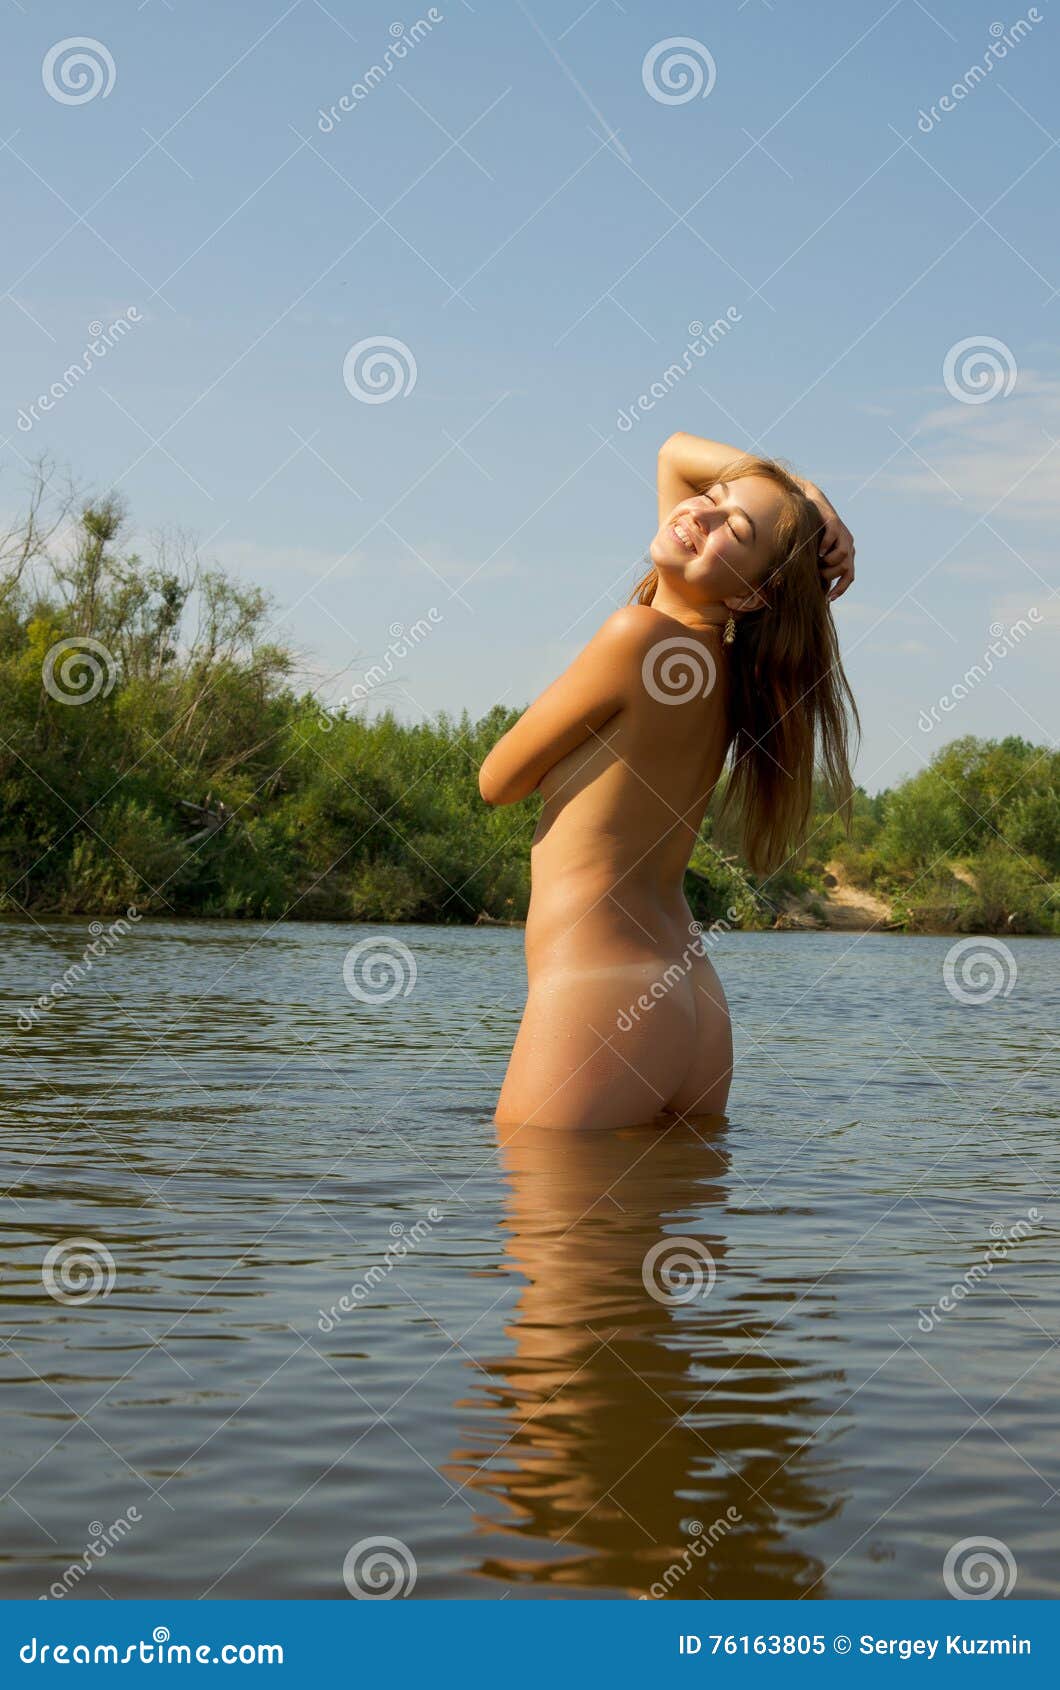 The River Girl nude photos